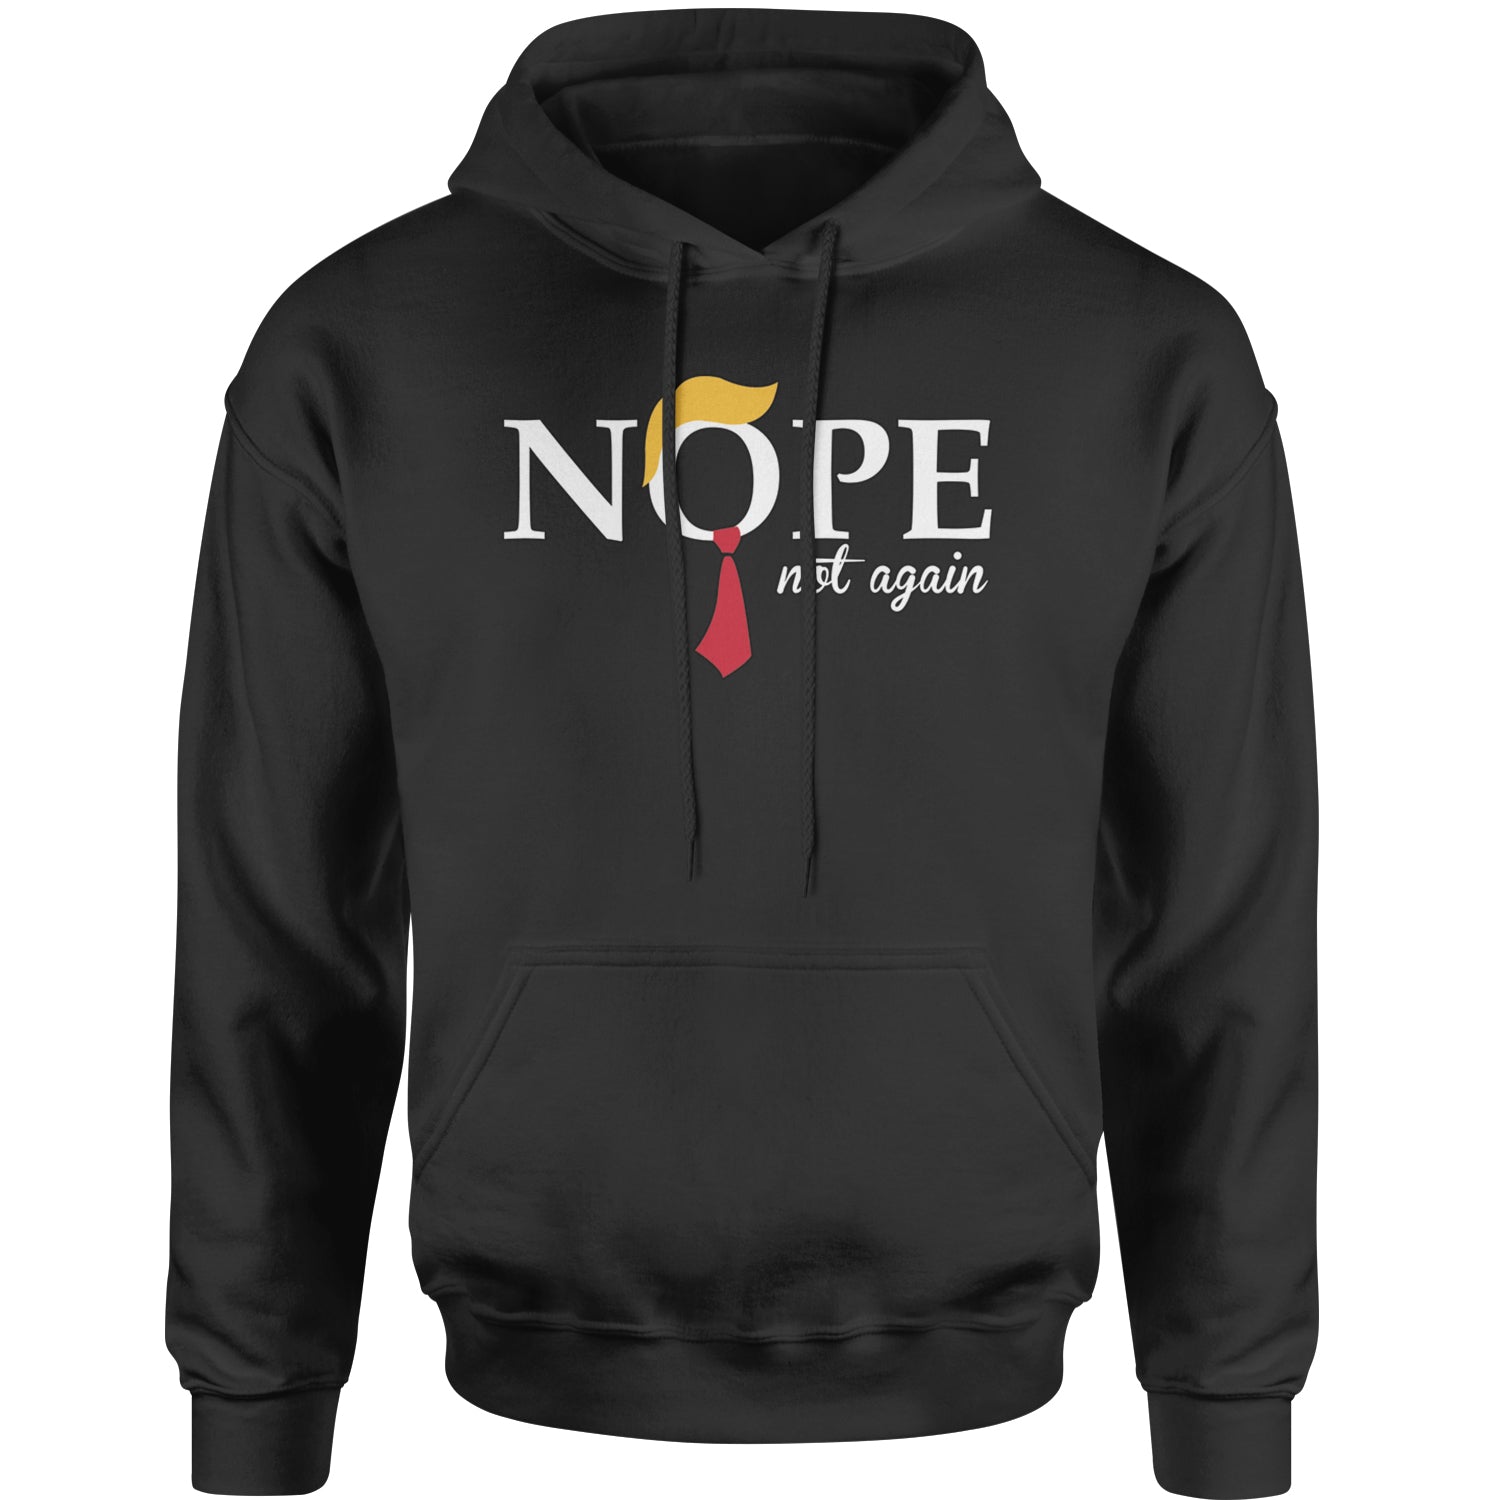 Nope Not Again Swift Anti-Trump Adult Hoodie Sweatshirt